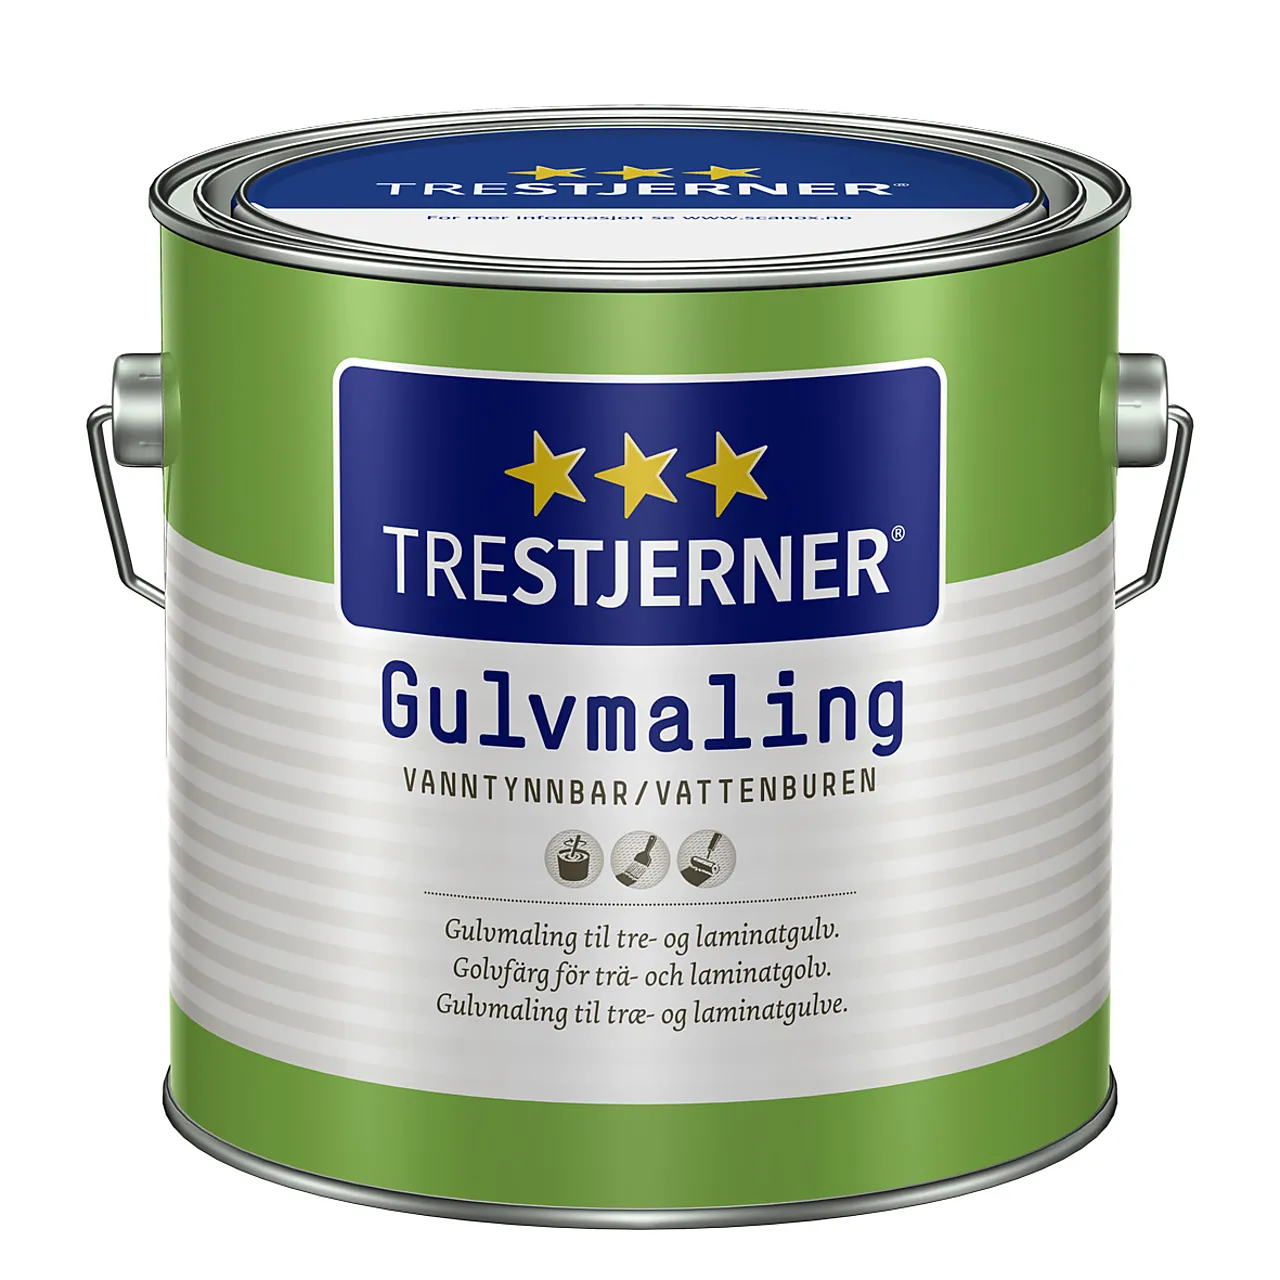 Trestjerner Gulvmaling matt A Base 2,7 liter Maling For Gulv null - null - 1